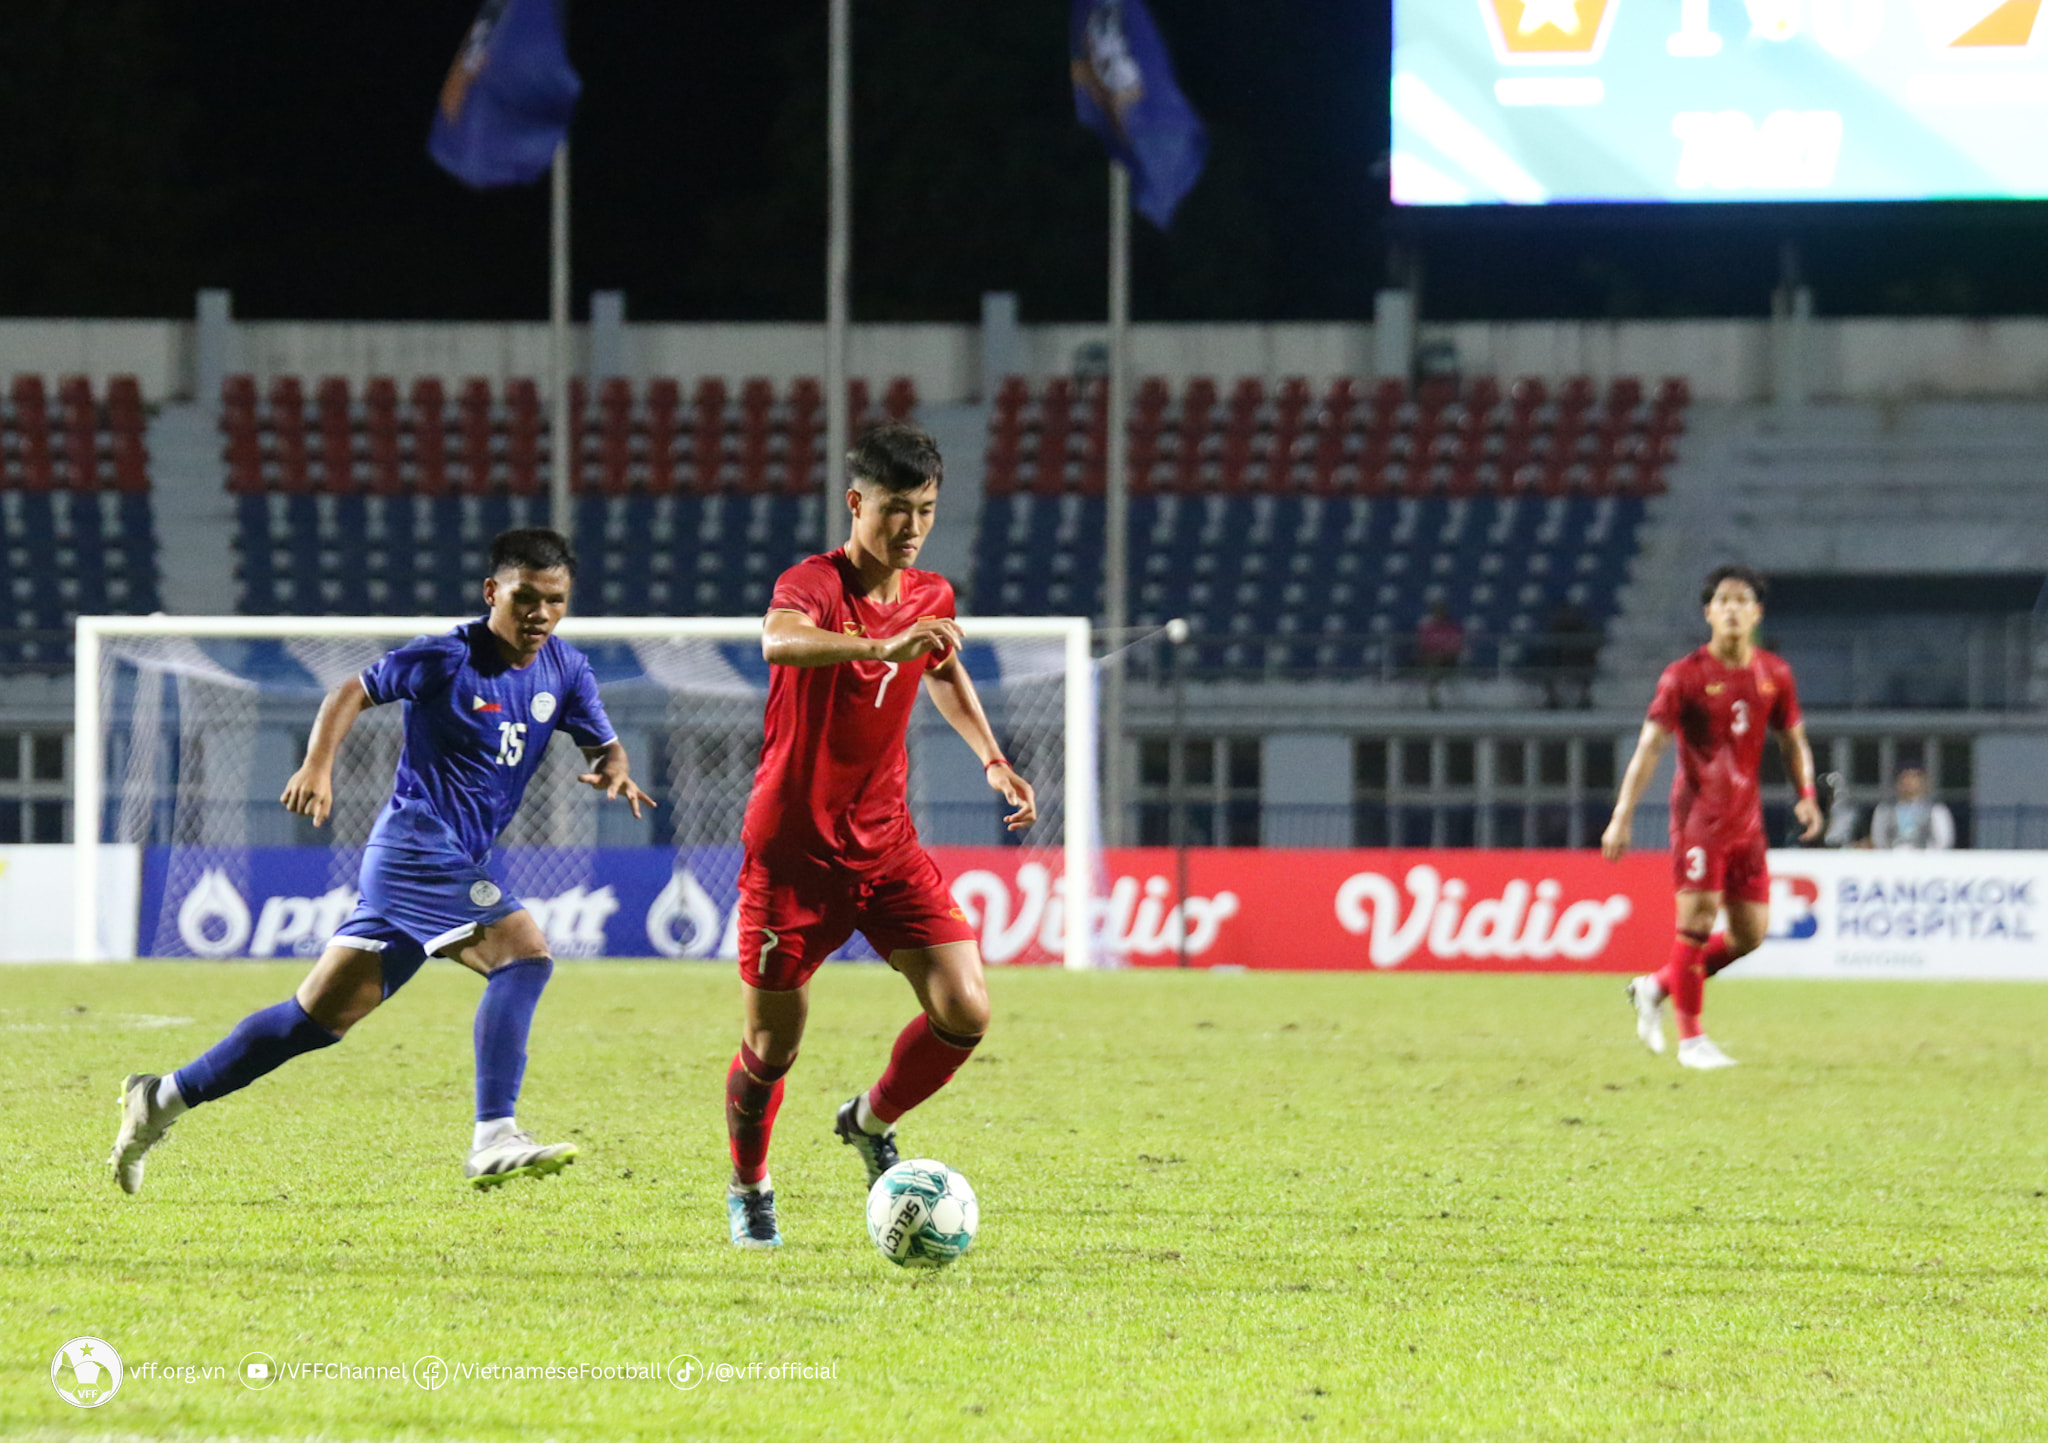 HLV Hoàng Anh Tuấn chưa hài lòng với kết quả U23 Việt Nam giành chiến thắng tối thiểu 1-0 trước U23 Philippines